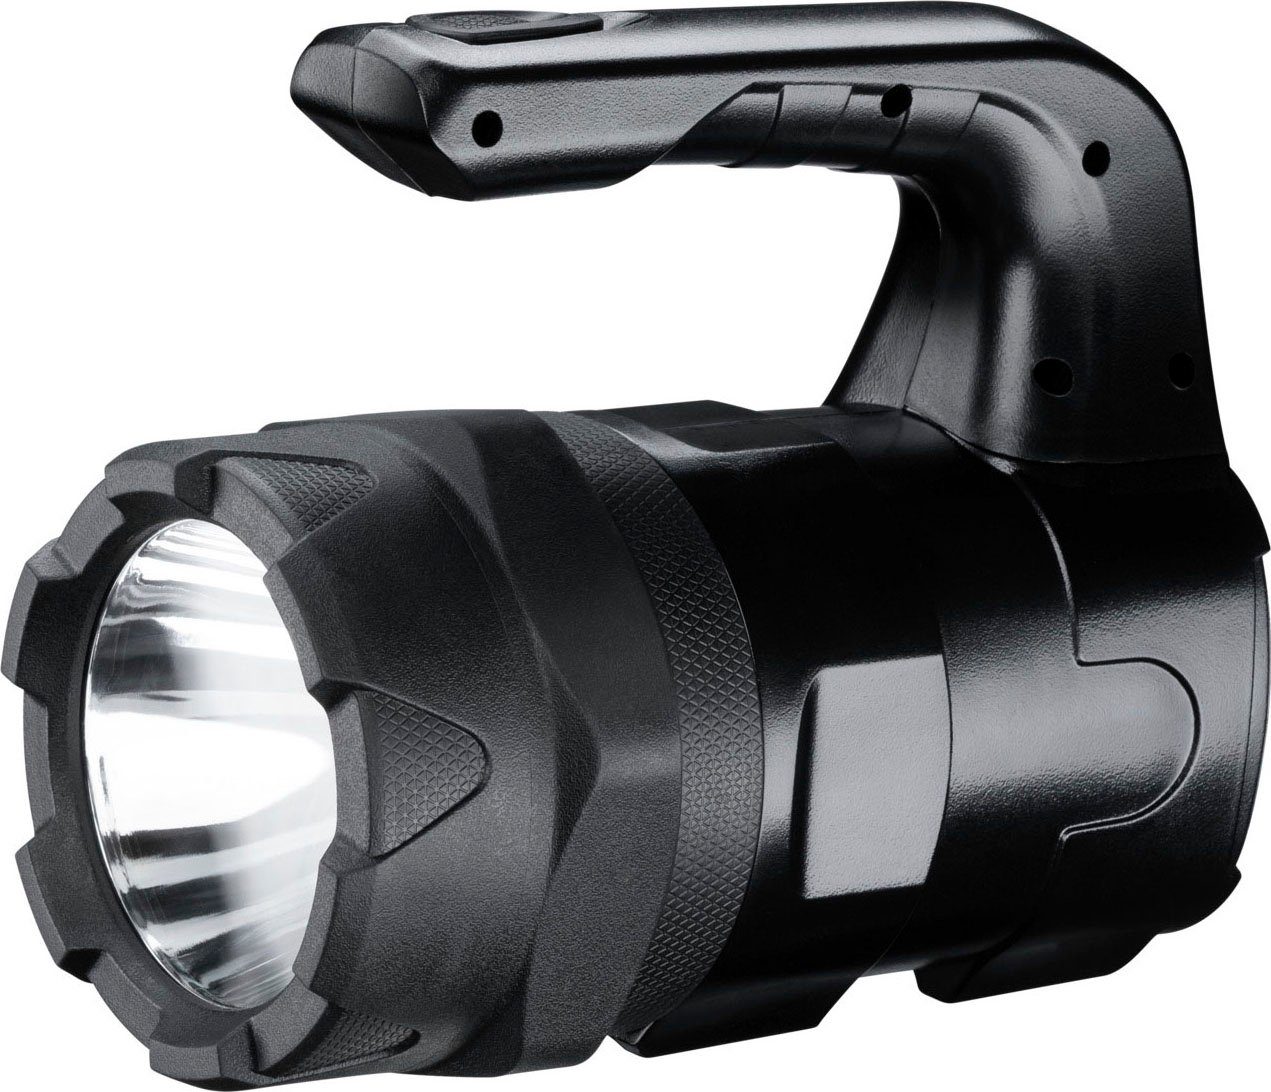 wasser- LED VARTA staubdicht, und stoßabsorbierend, 6 Taschenlampe Aluminium Watt Pro Indestructible BL20 Gehäuse eloxiertes (7-St),